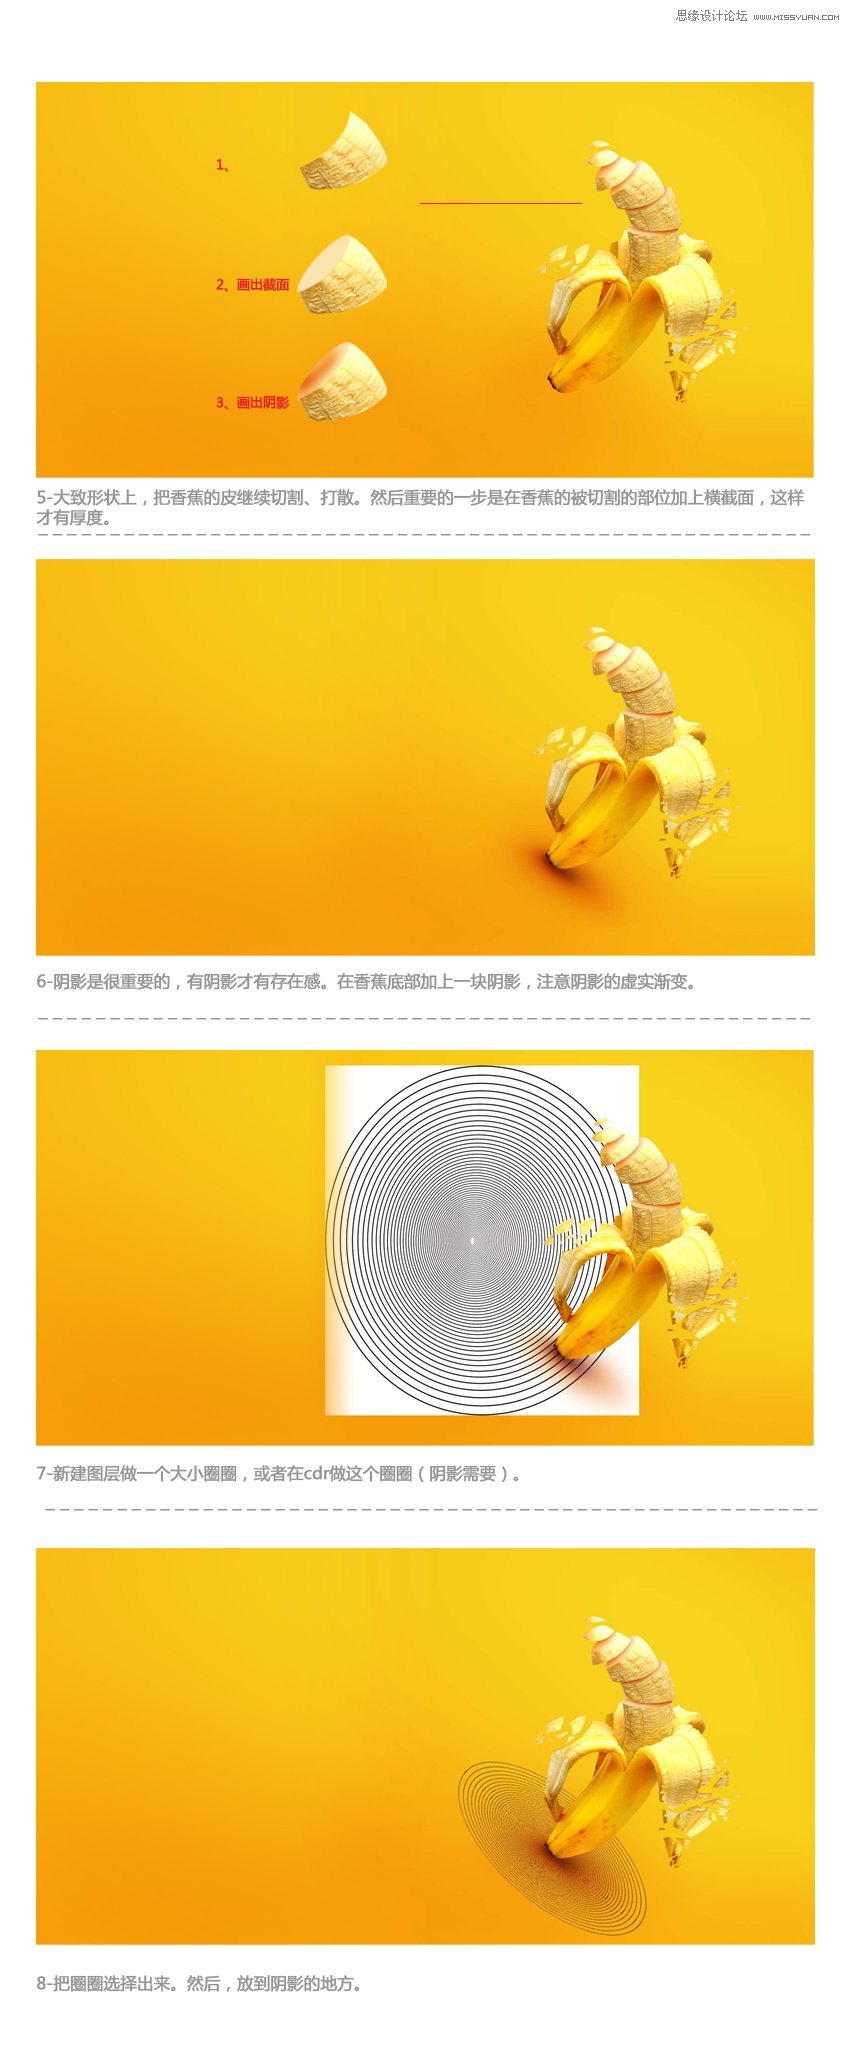 Photoshop设计创意的香蕉派对海报,PS教程,图老师教程网